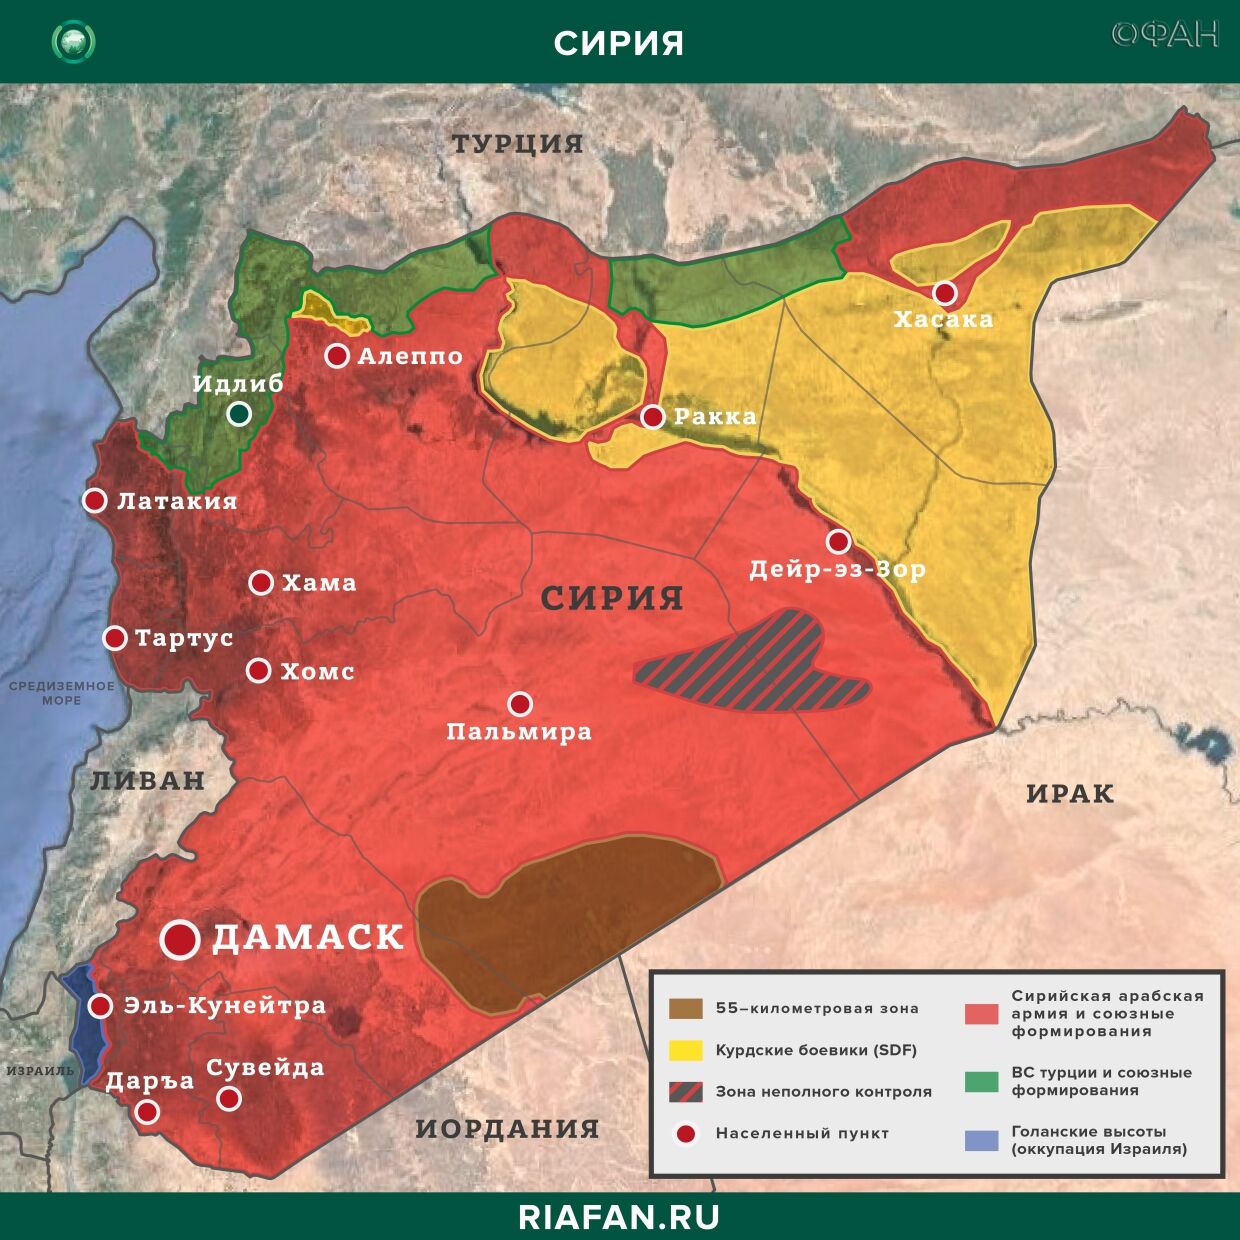 Syrie résultats quotidiens pour 20 Mars 06.00: рост дезертирства среди курдских боевиков, 2 турецких солдата погибли при взрывах в Идлибе